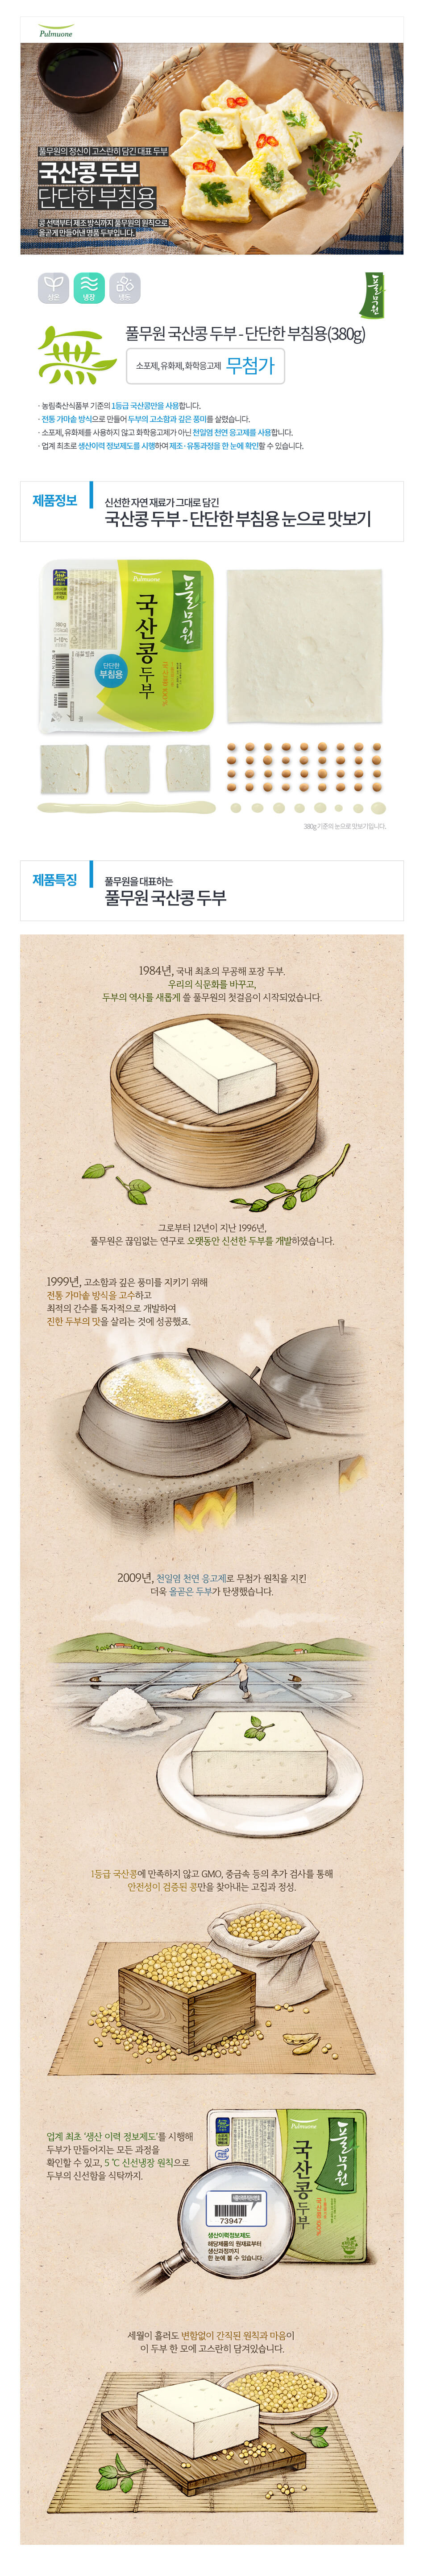 韓國食品-[Pulmuone] Tofu for Fried 300g